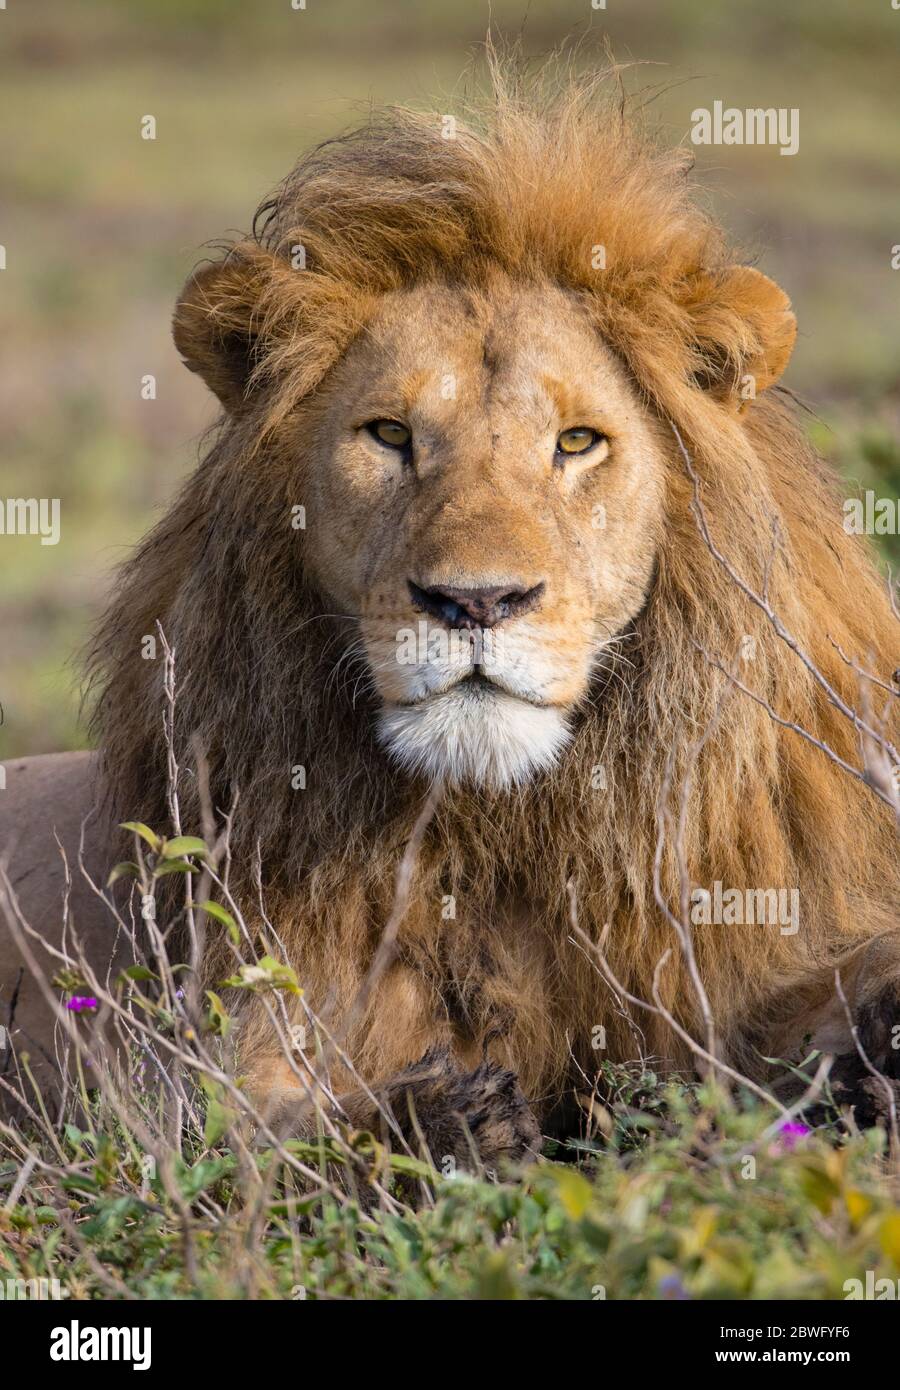 Lion (Panthera leo), zone de conservation de Ngorongoro, Tanzanie, Afrique Banque D'Images